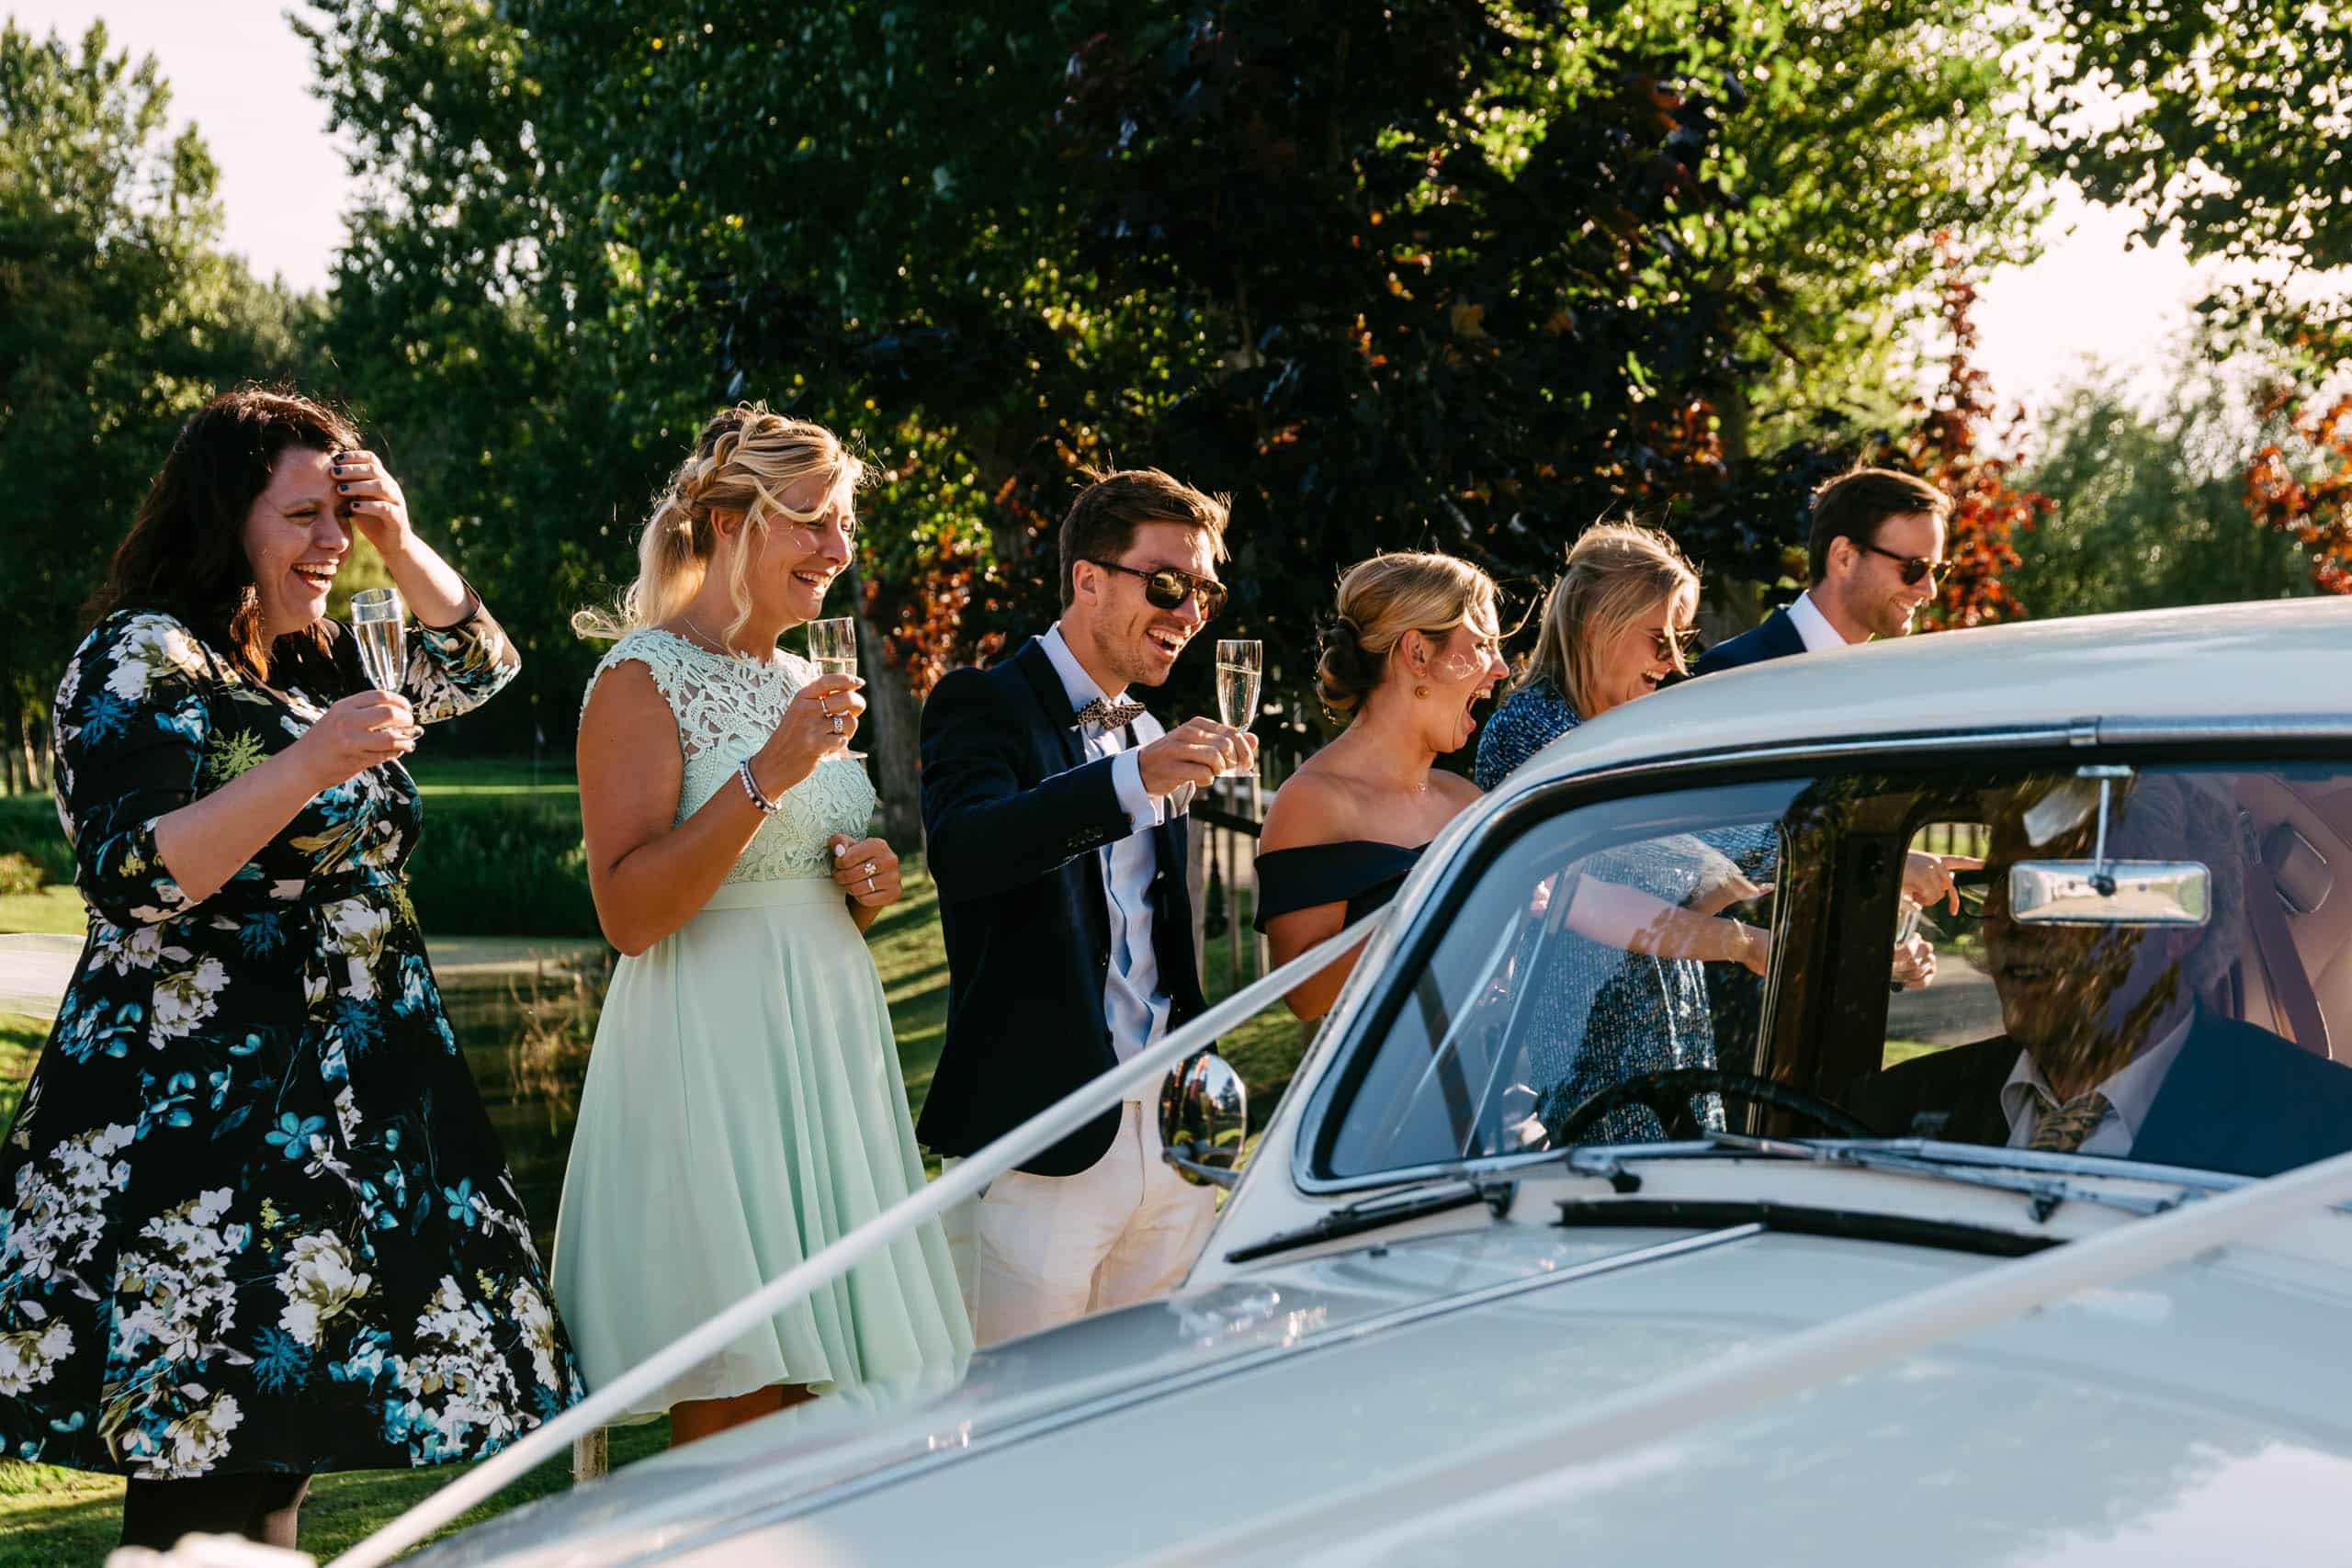 Een groep bruidsmeisjes en bruidegom roosteren voor een oldtimer tijdens hun huwelijksfeest.